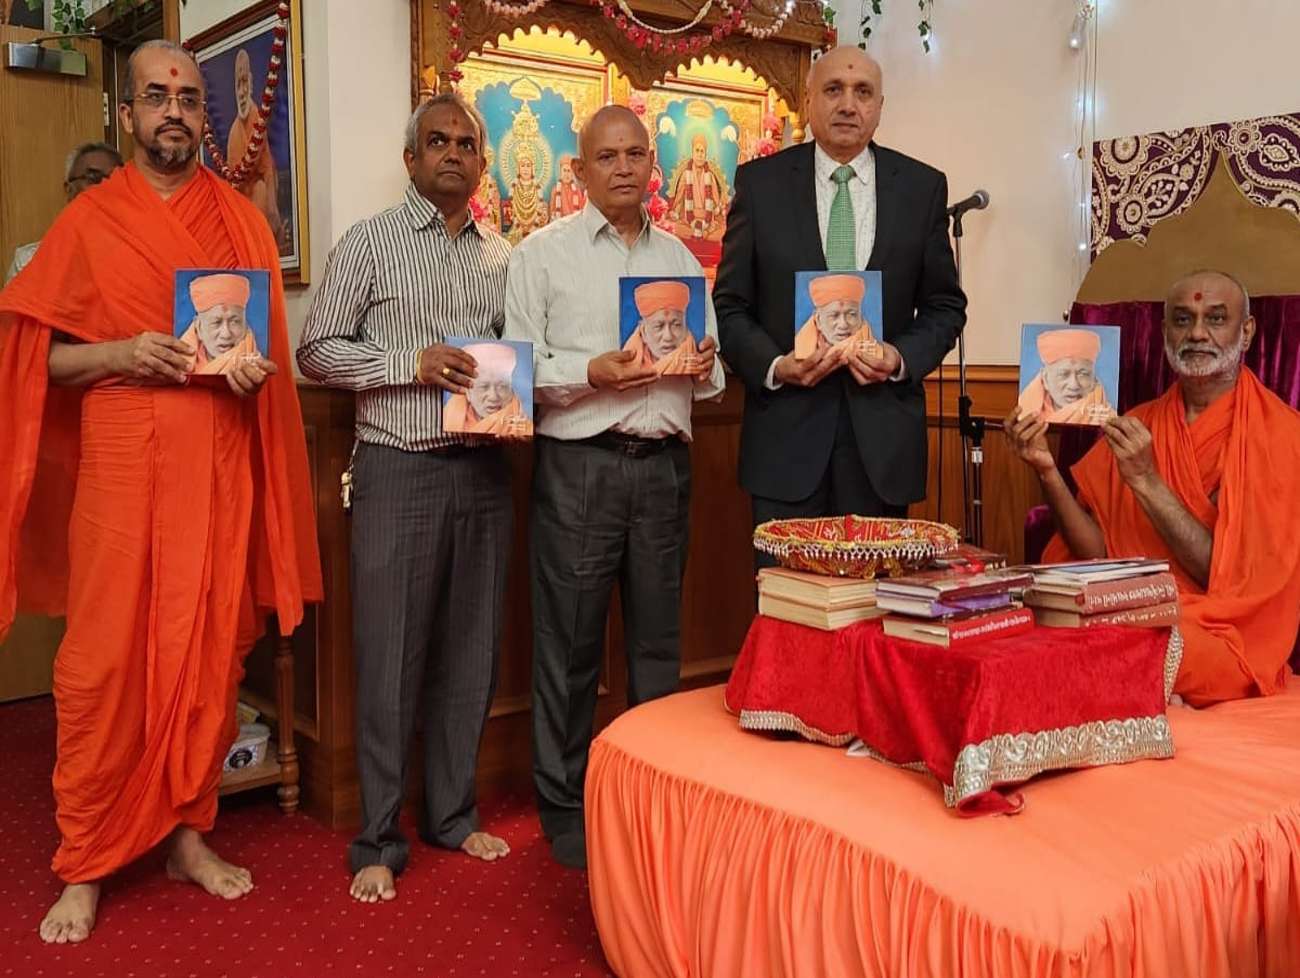 શ્રી સ્વામિનારાયણ મંદિર - કુમકુમ - લંડન ખાતે “Idol of Sainthood Sadguru Shastri Shree Anandpriyadasji Swami” પુસ્તકનું વિમોચન કરવામાં આવ્યું